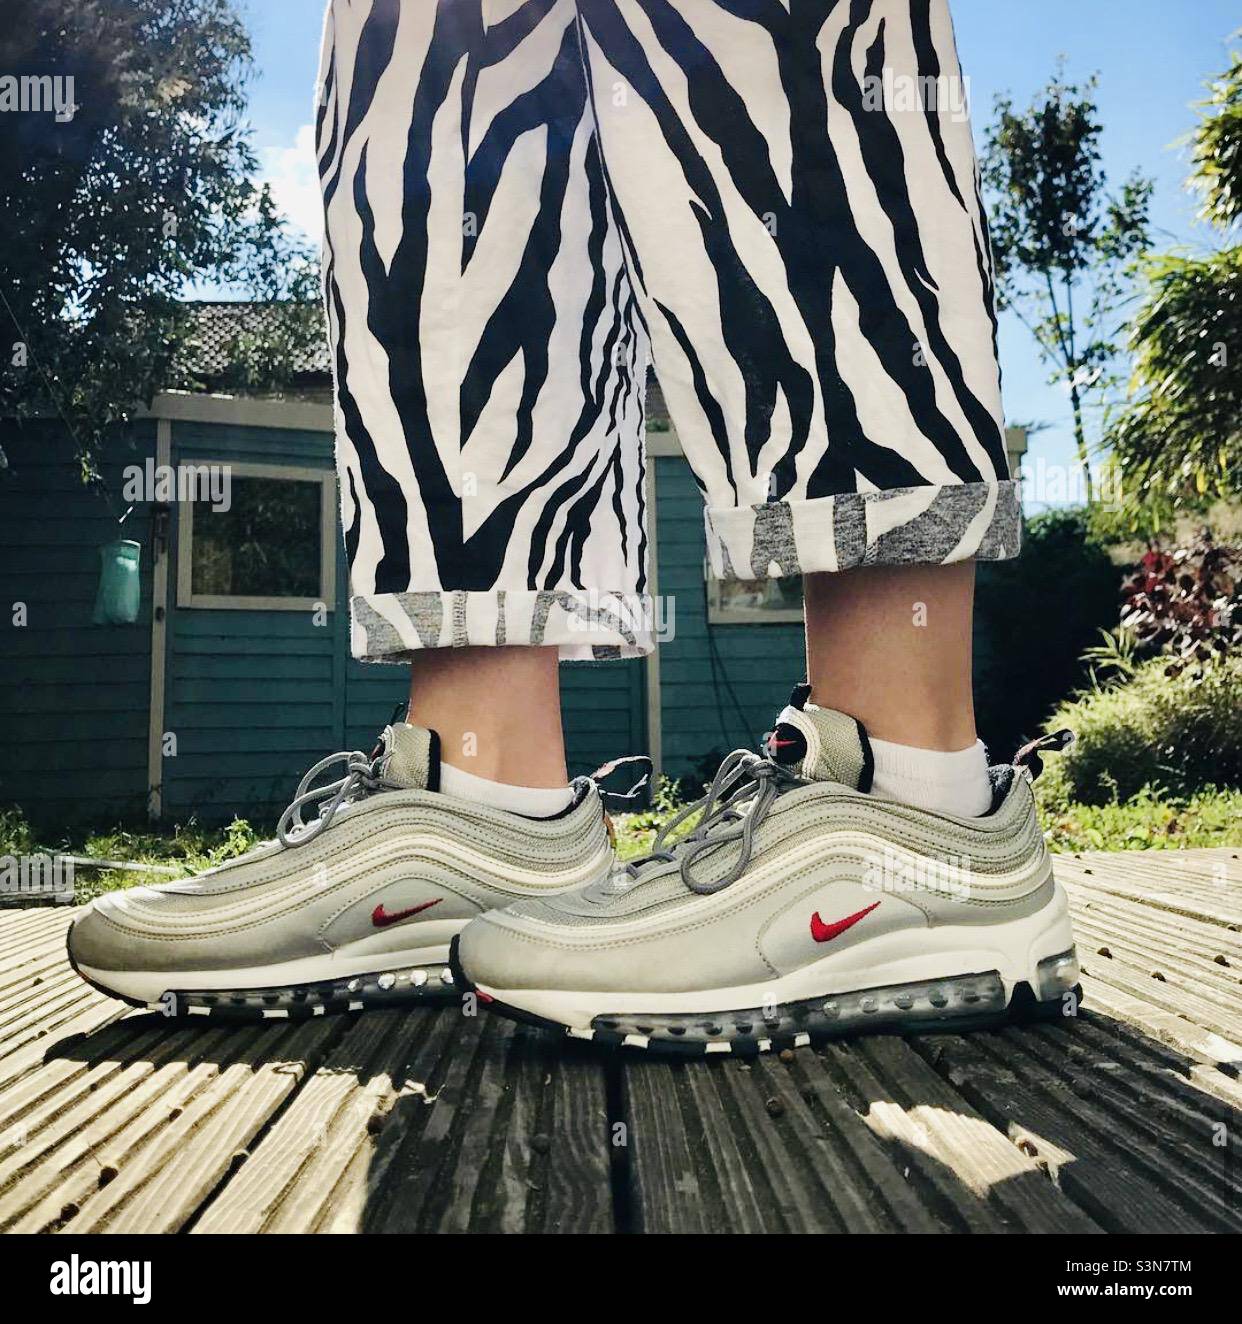 Beine mit Zebramuster – eine Frau im Zebra bedruckte dreiviertel lange Hose und Nike Sportschuhe, die auf der Terrasse im Garten stehen Stockfoto